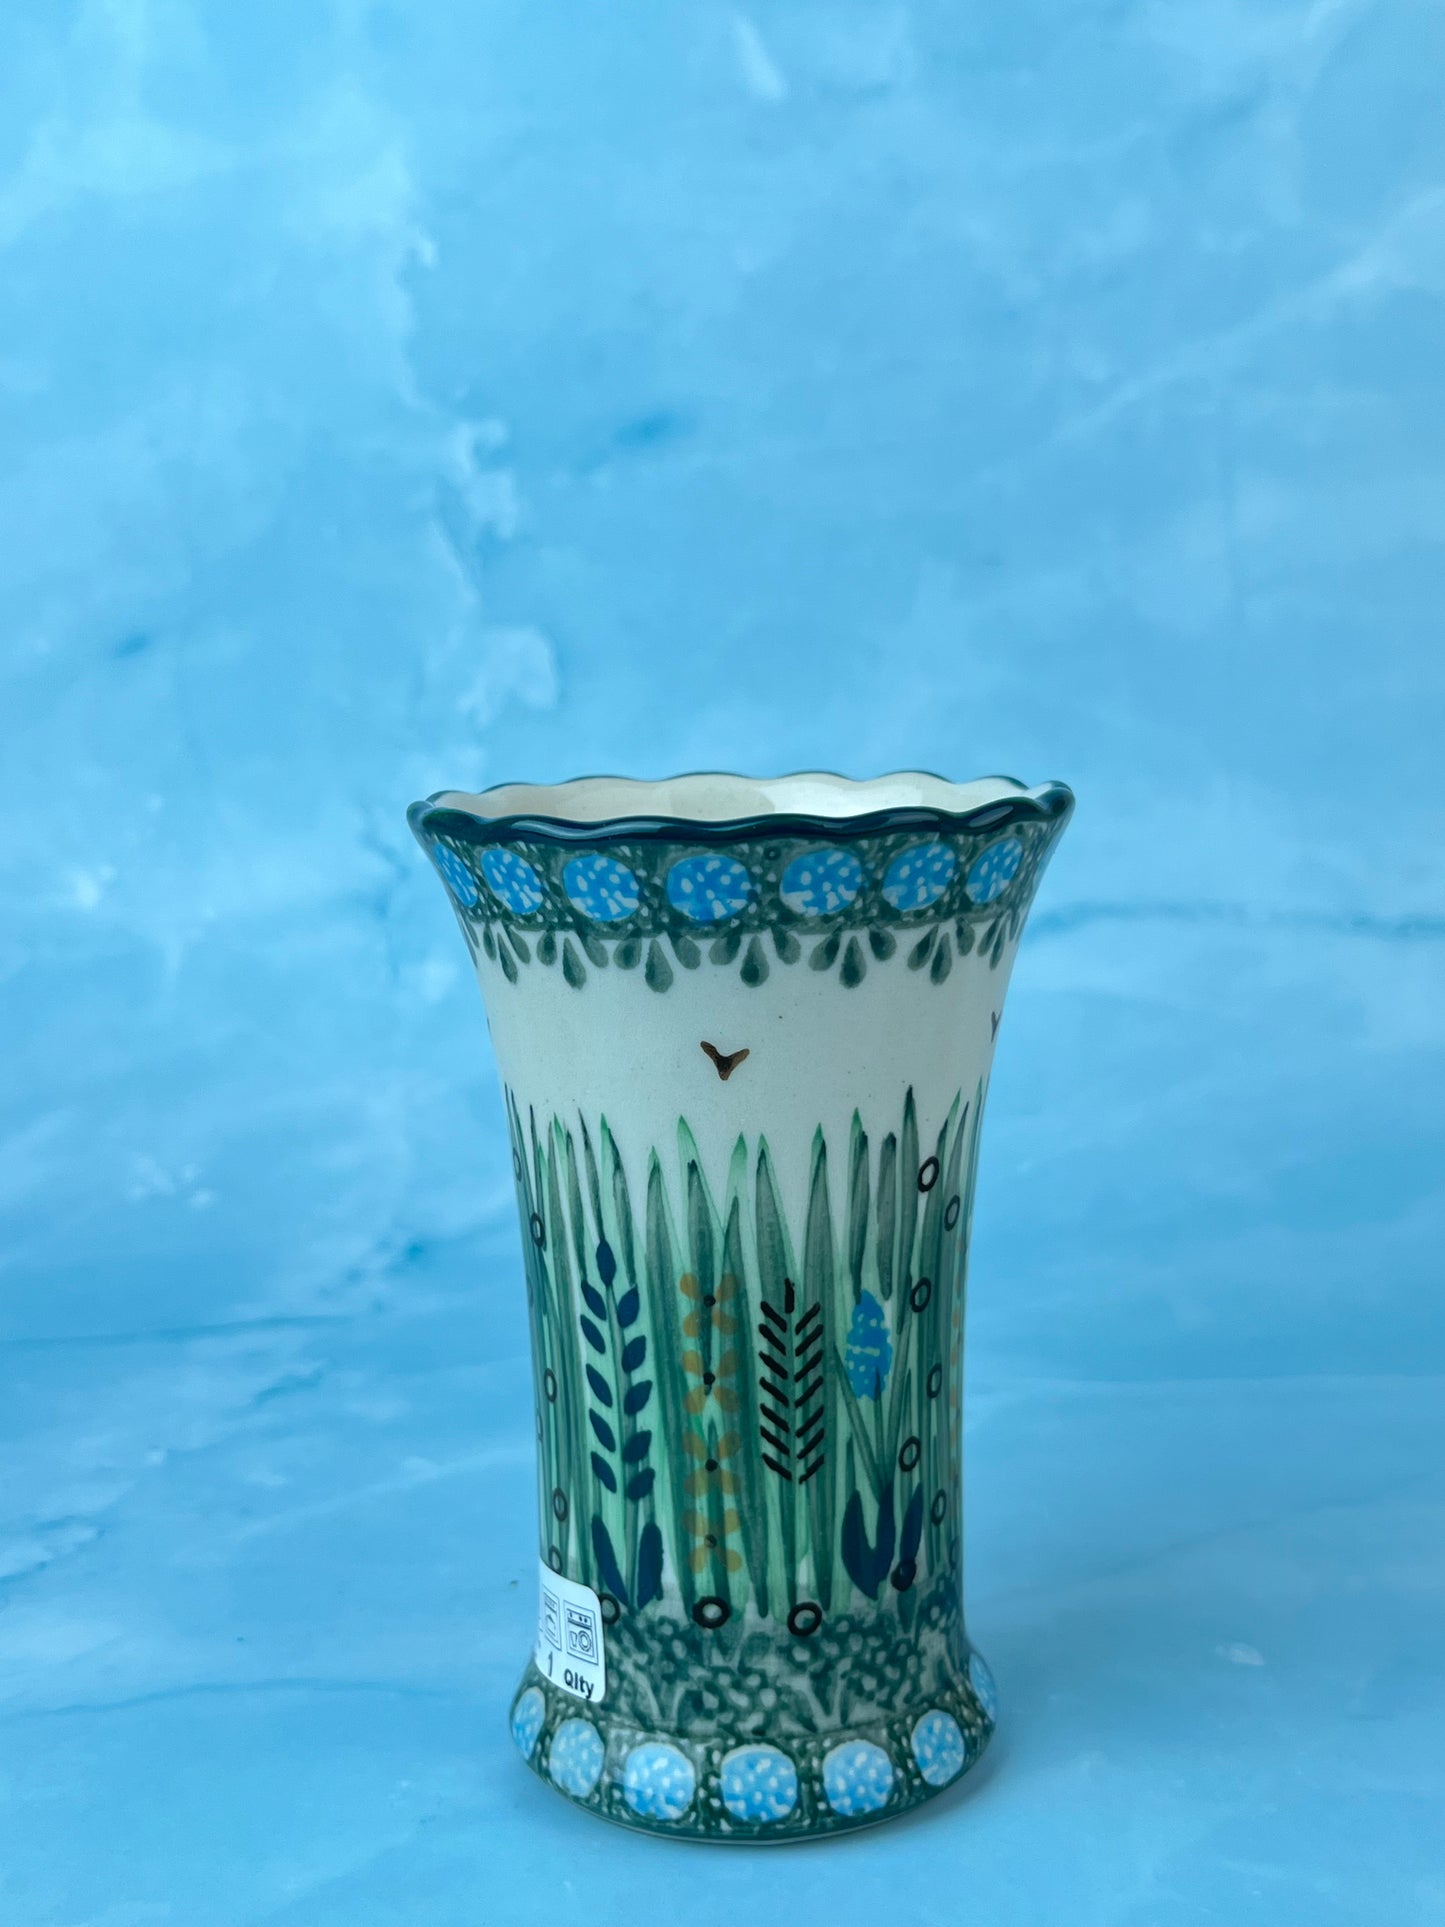 Ruffled Unikat Bud Vase - Shape 127 - Pattern U803